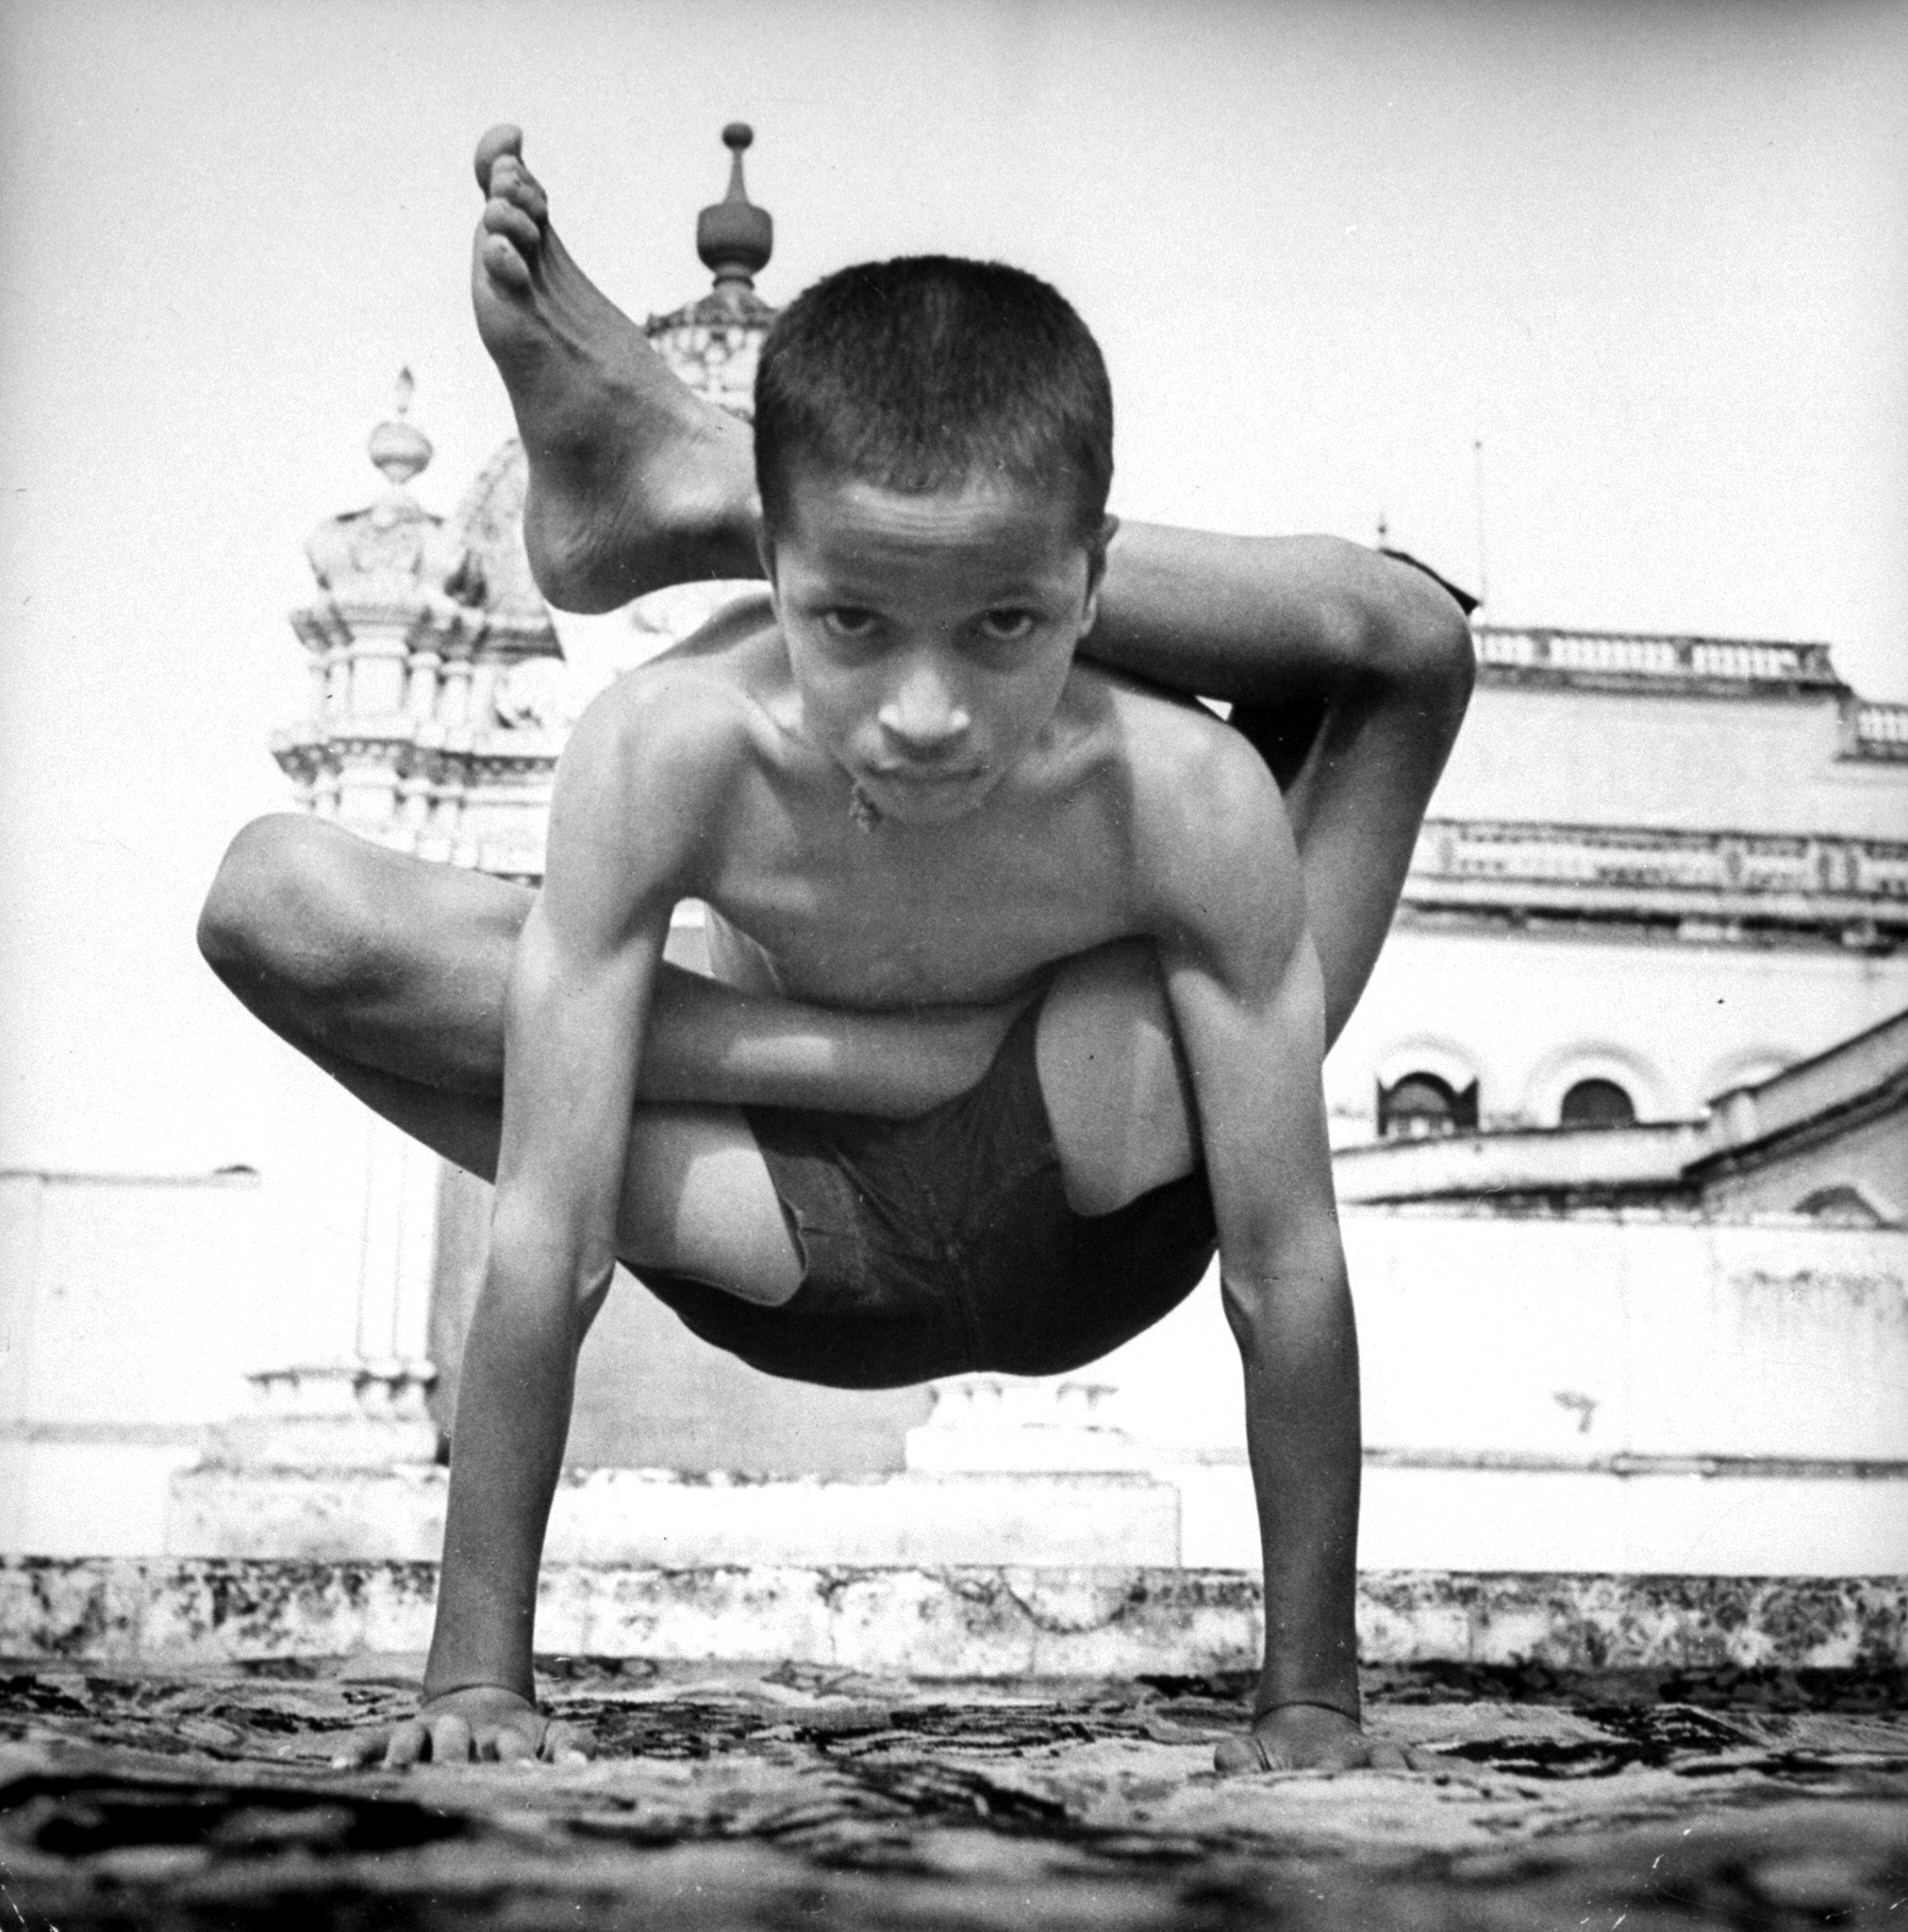 Vintage Yoga photo from LIFE magazine.